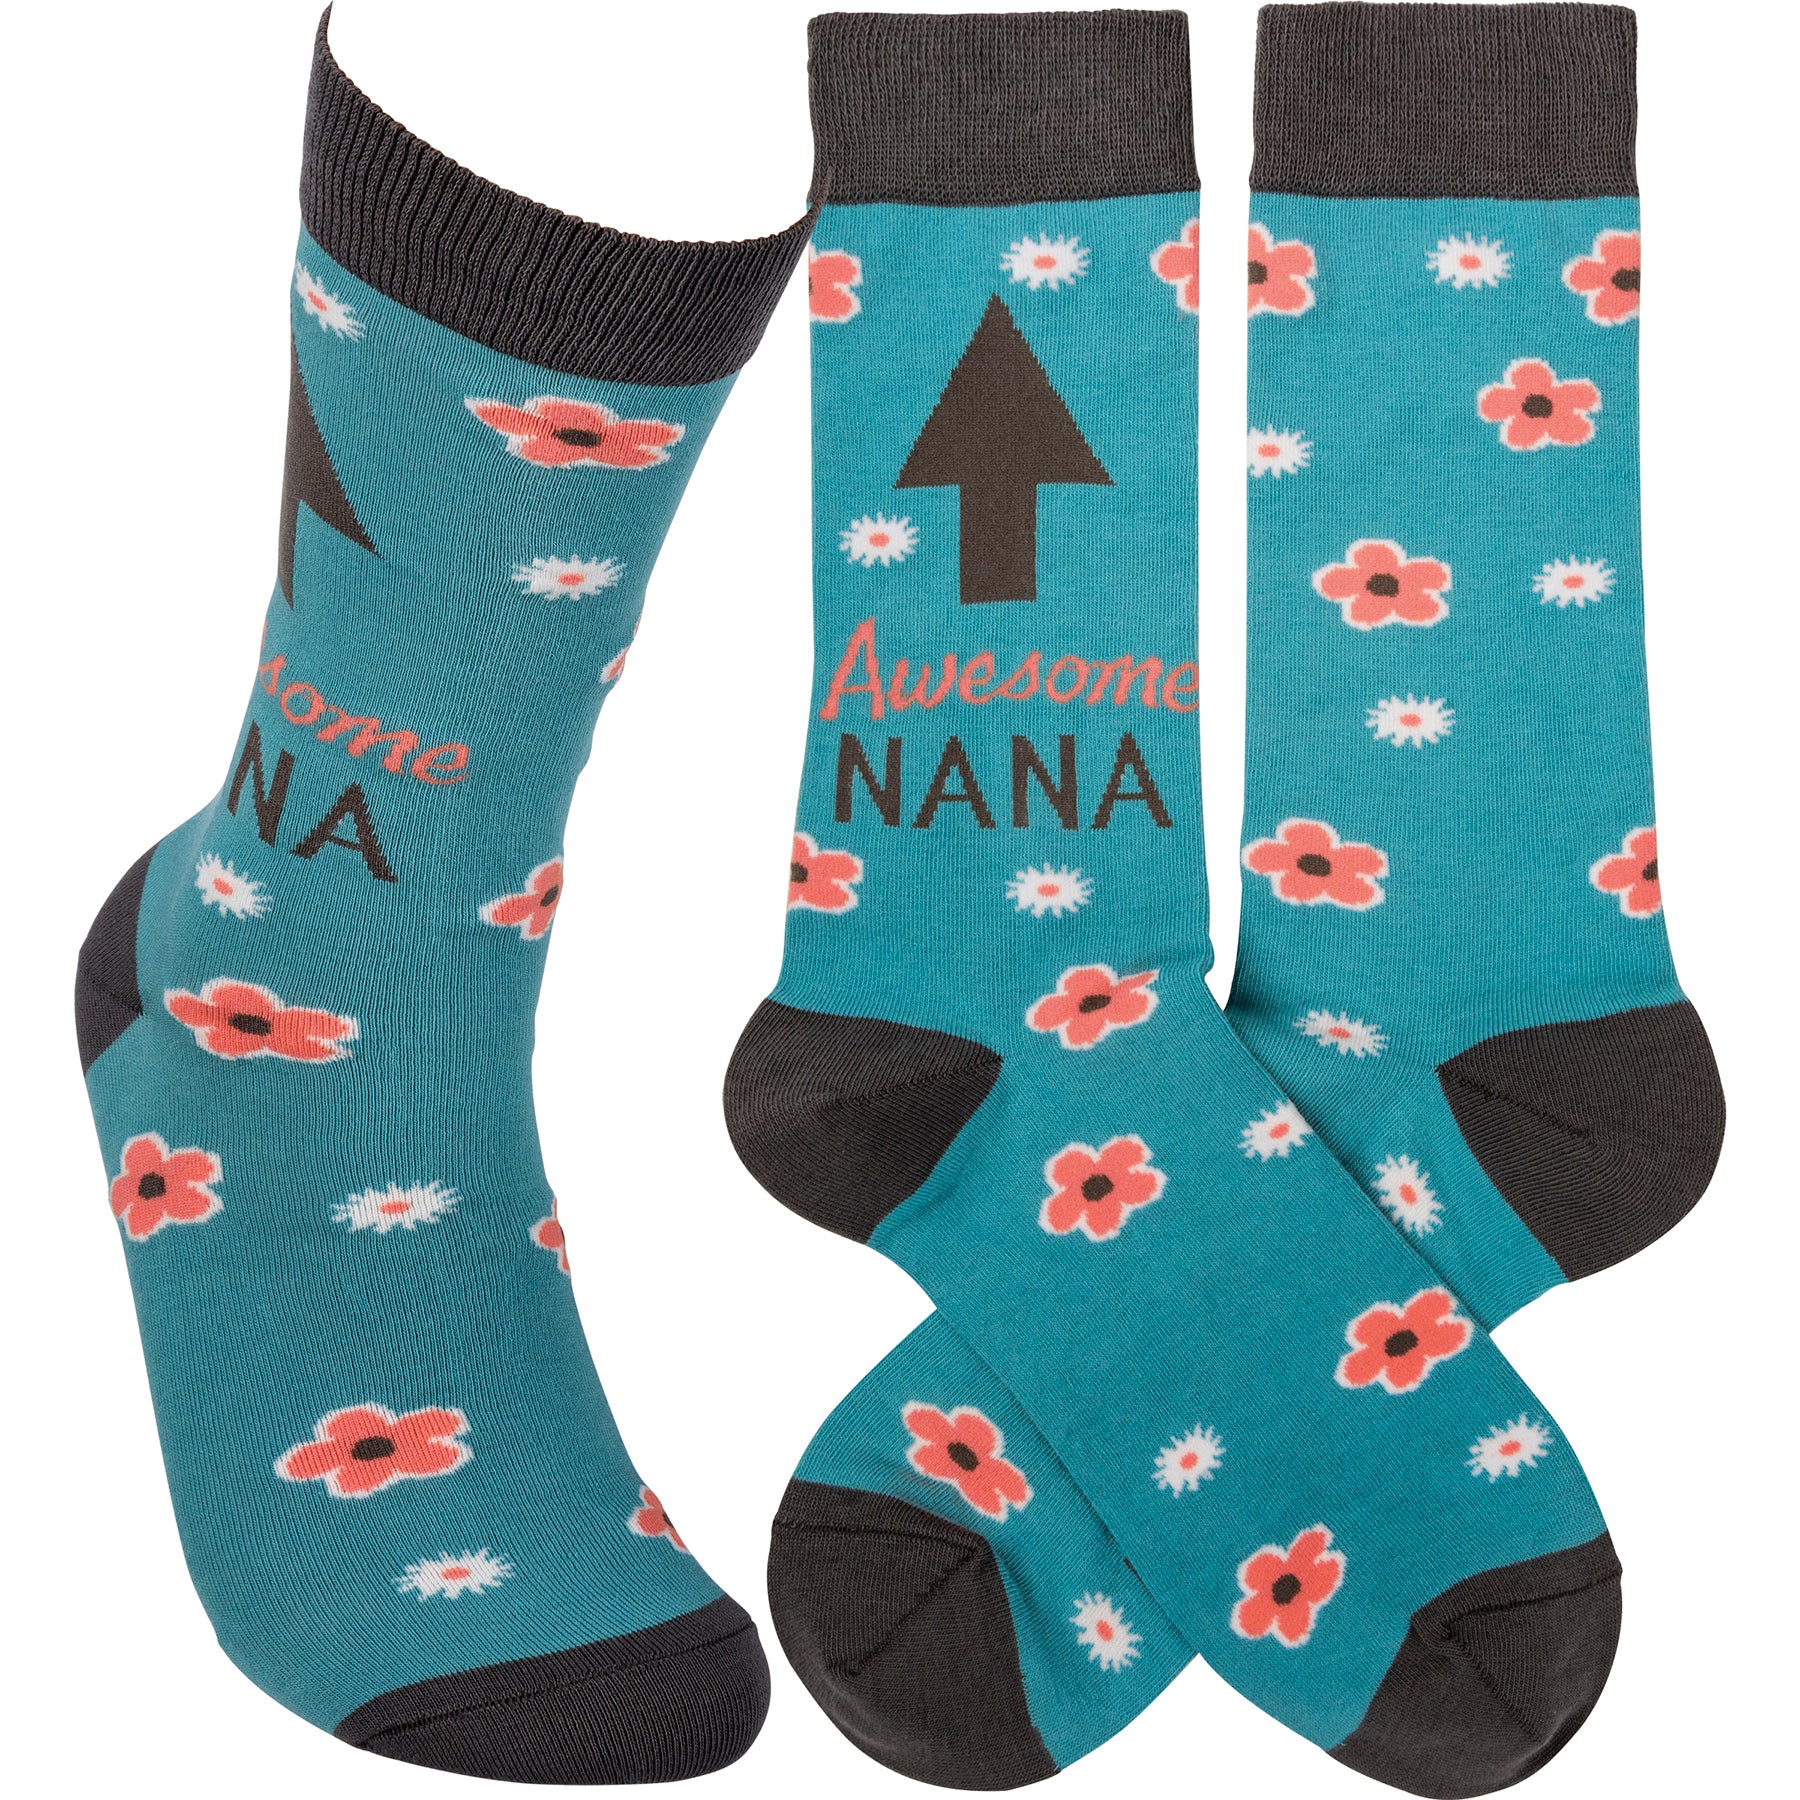 Socks Awesome Nana